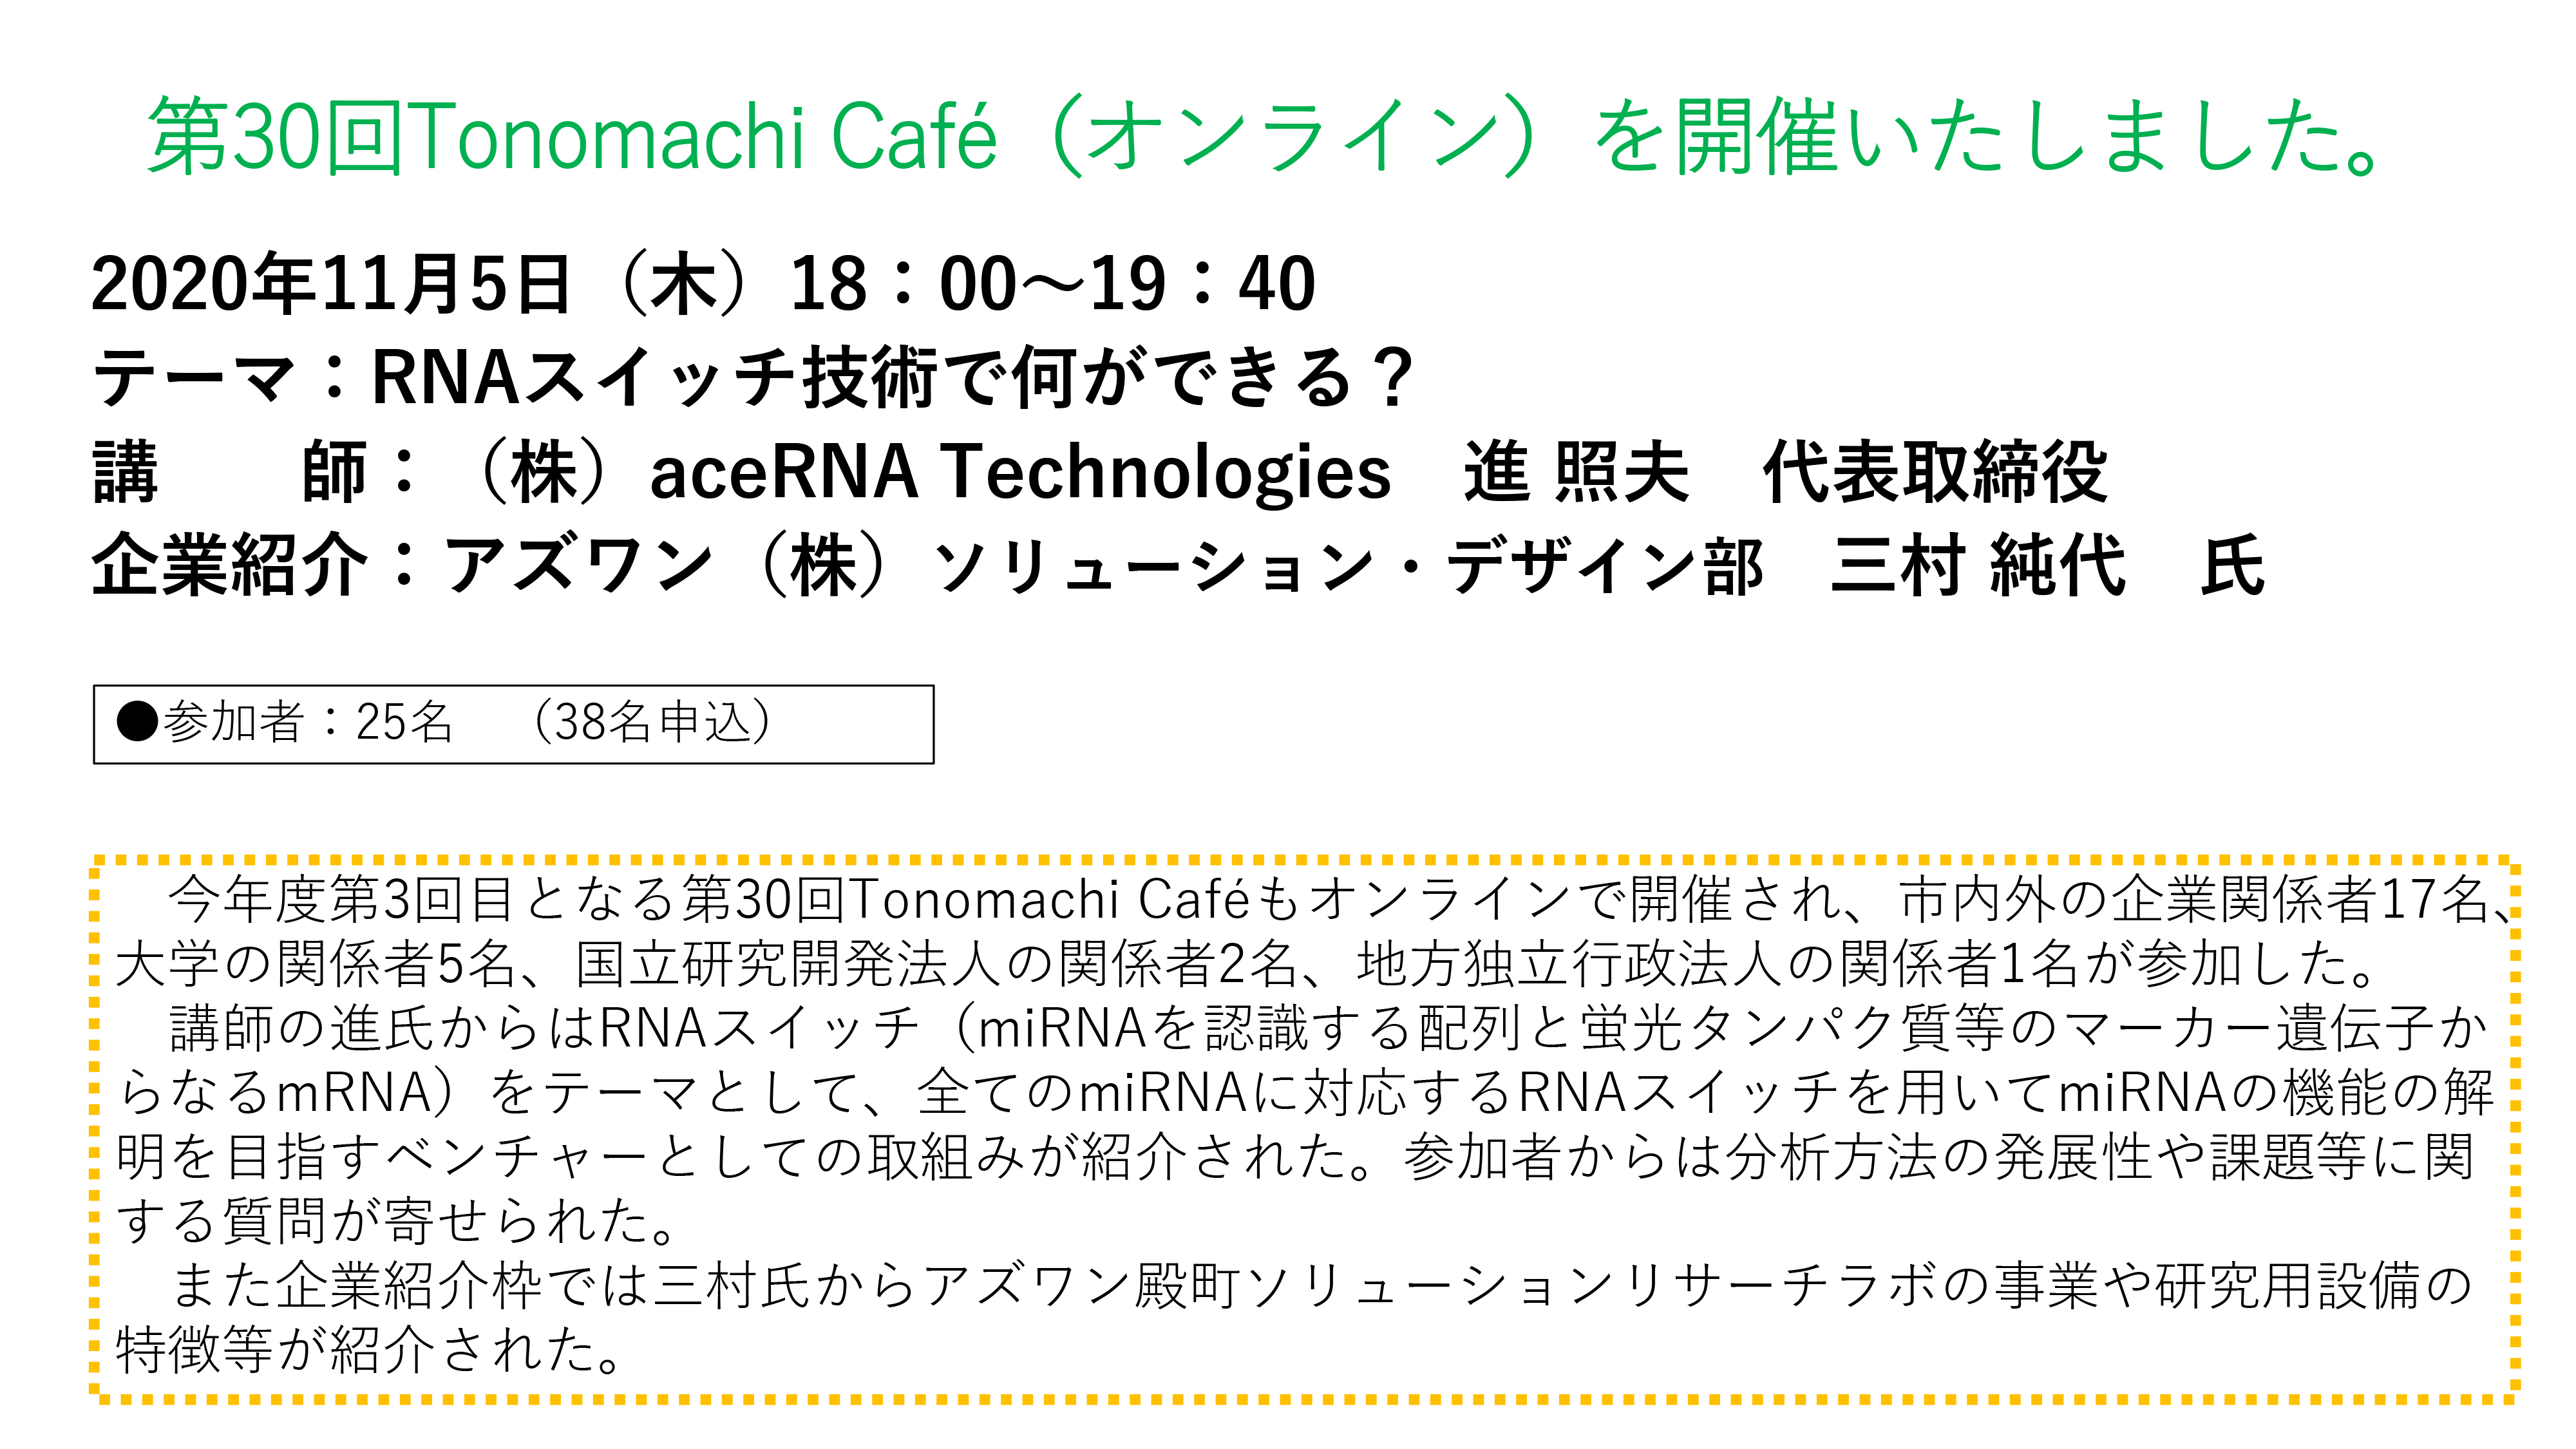 The 30th Tonomachi café online version image